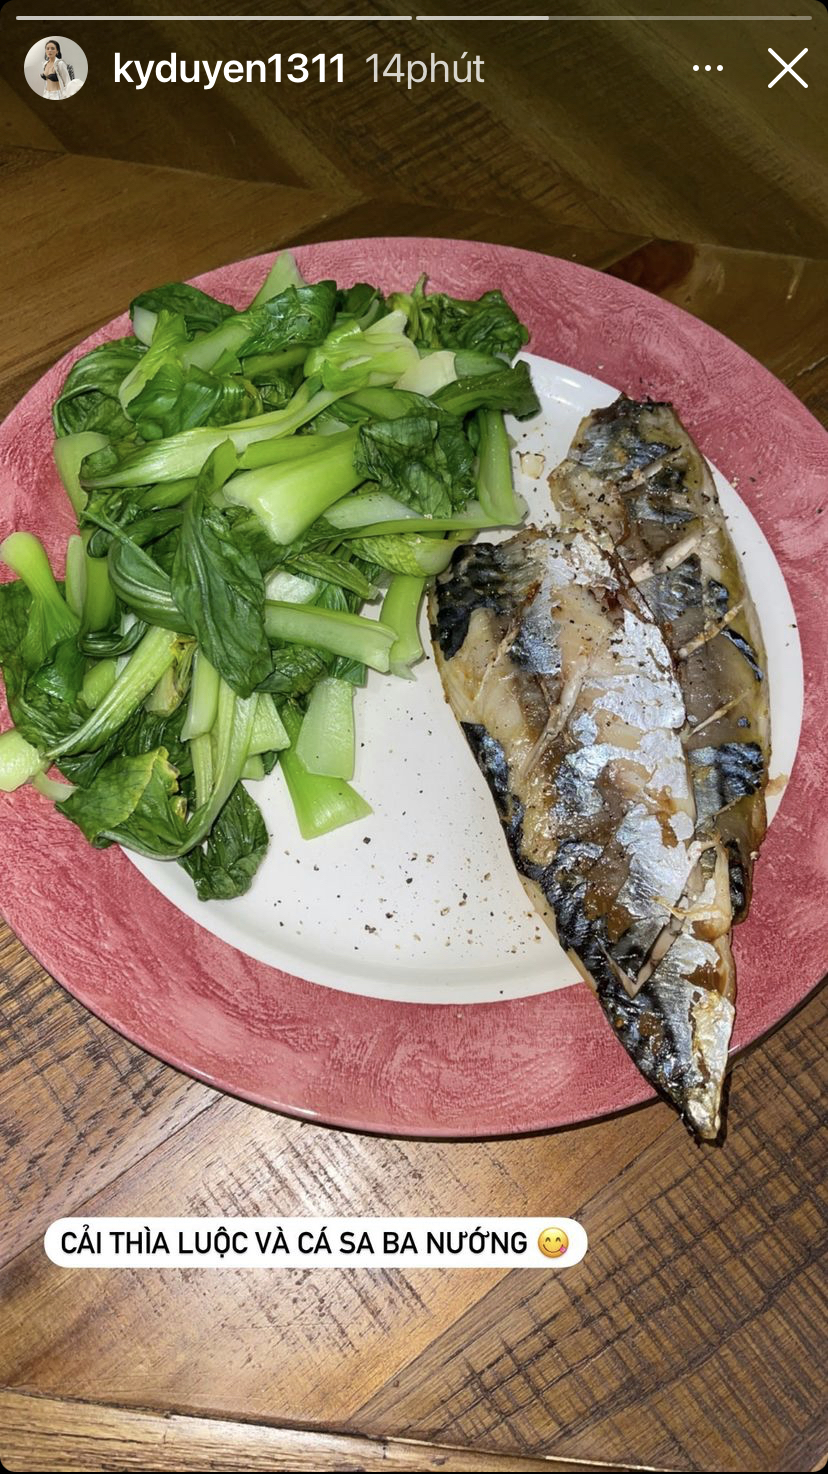 Hoa hậu Kỳ Duyên hôm nay có một bữa ăn khá healthy với cải thìa luộc và cá sa ba nướng.